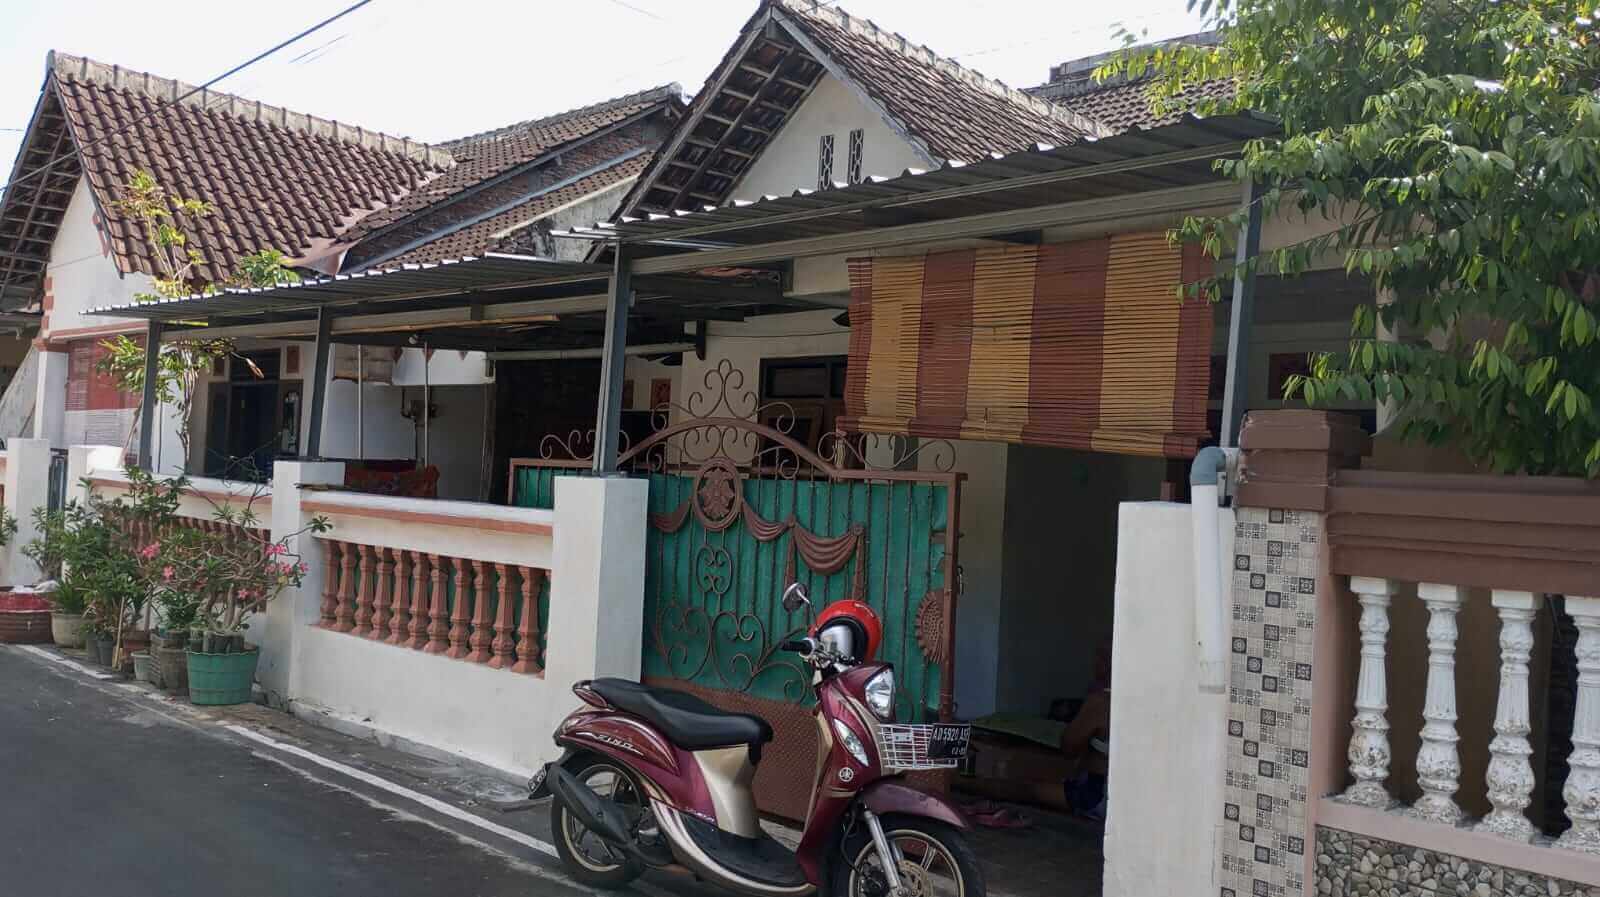 Jual Rumah di Kartasura Solo Surakarta Pabelan Manahan Singopuran Colomadu Klegen Bandara